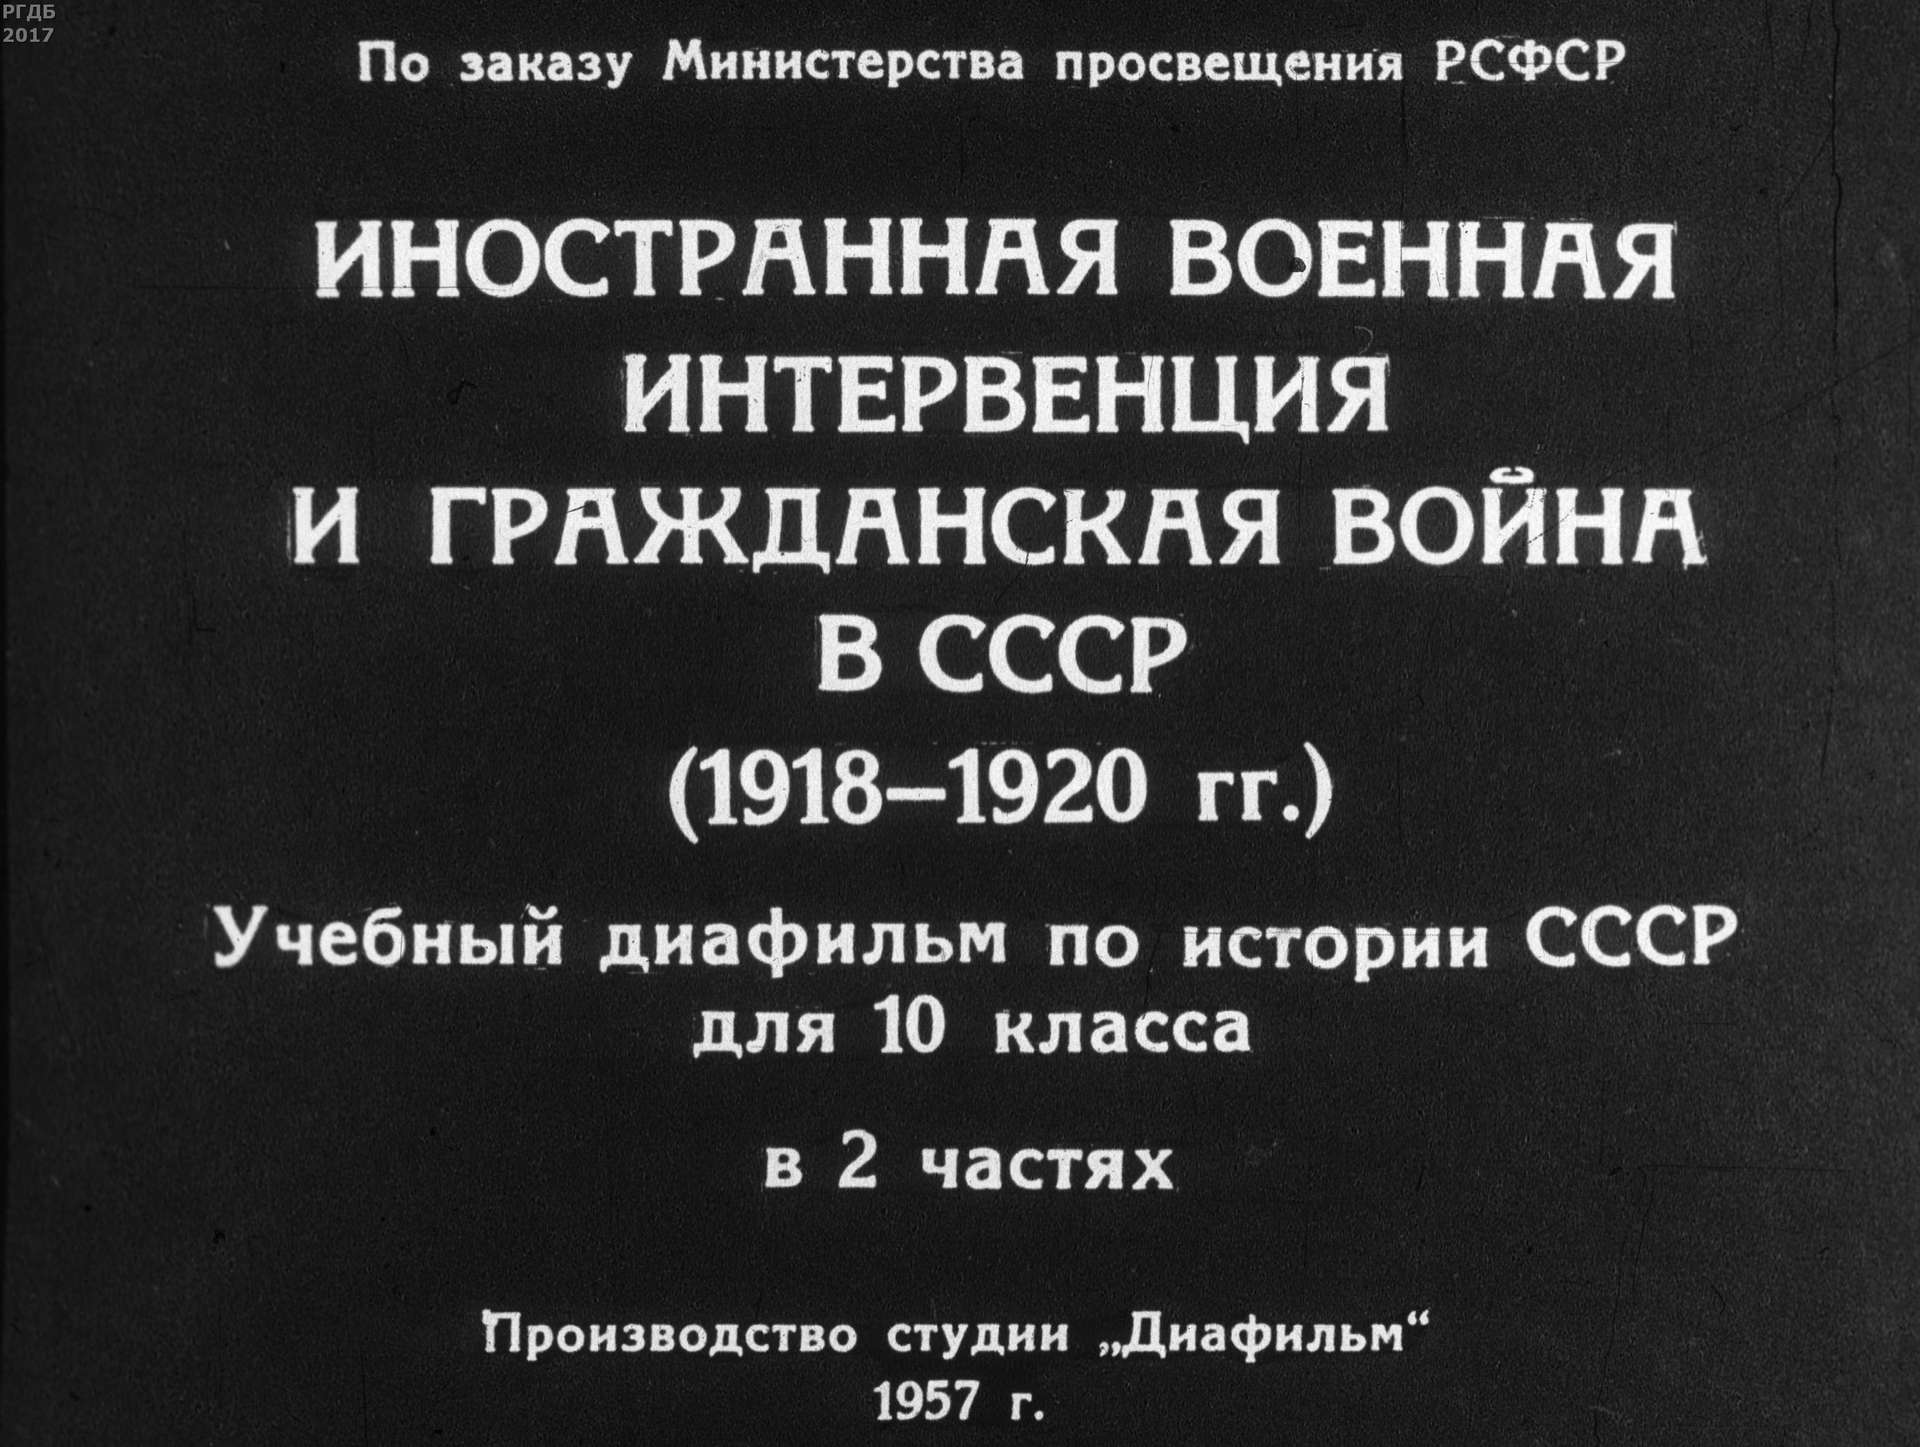 Иностранная военная интервенция и гражданская война в СССР (1918-1920 гг.). Ч.2